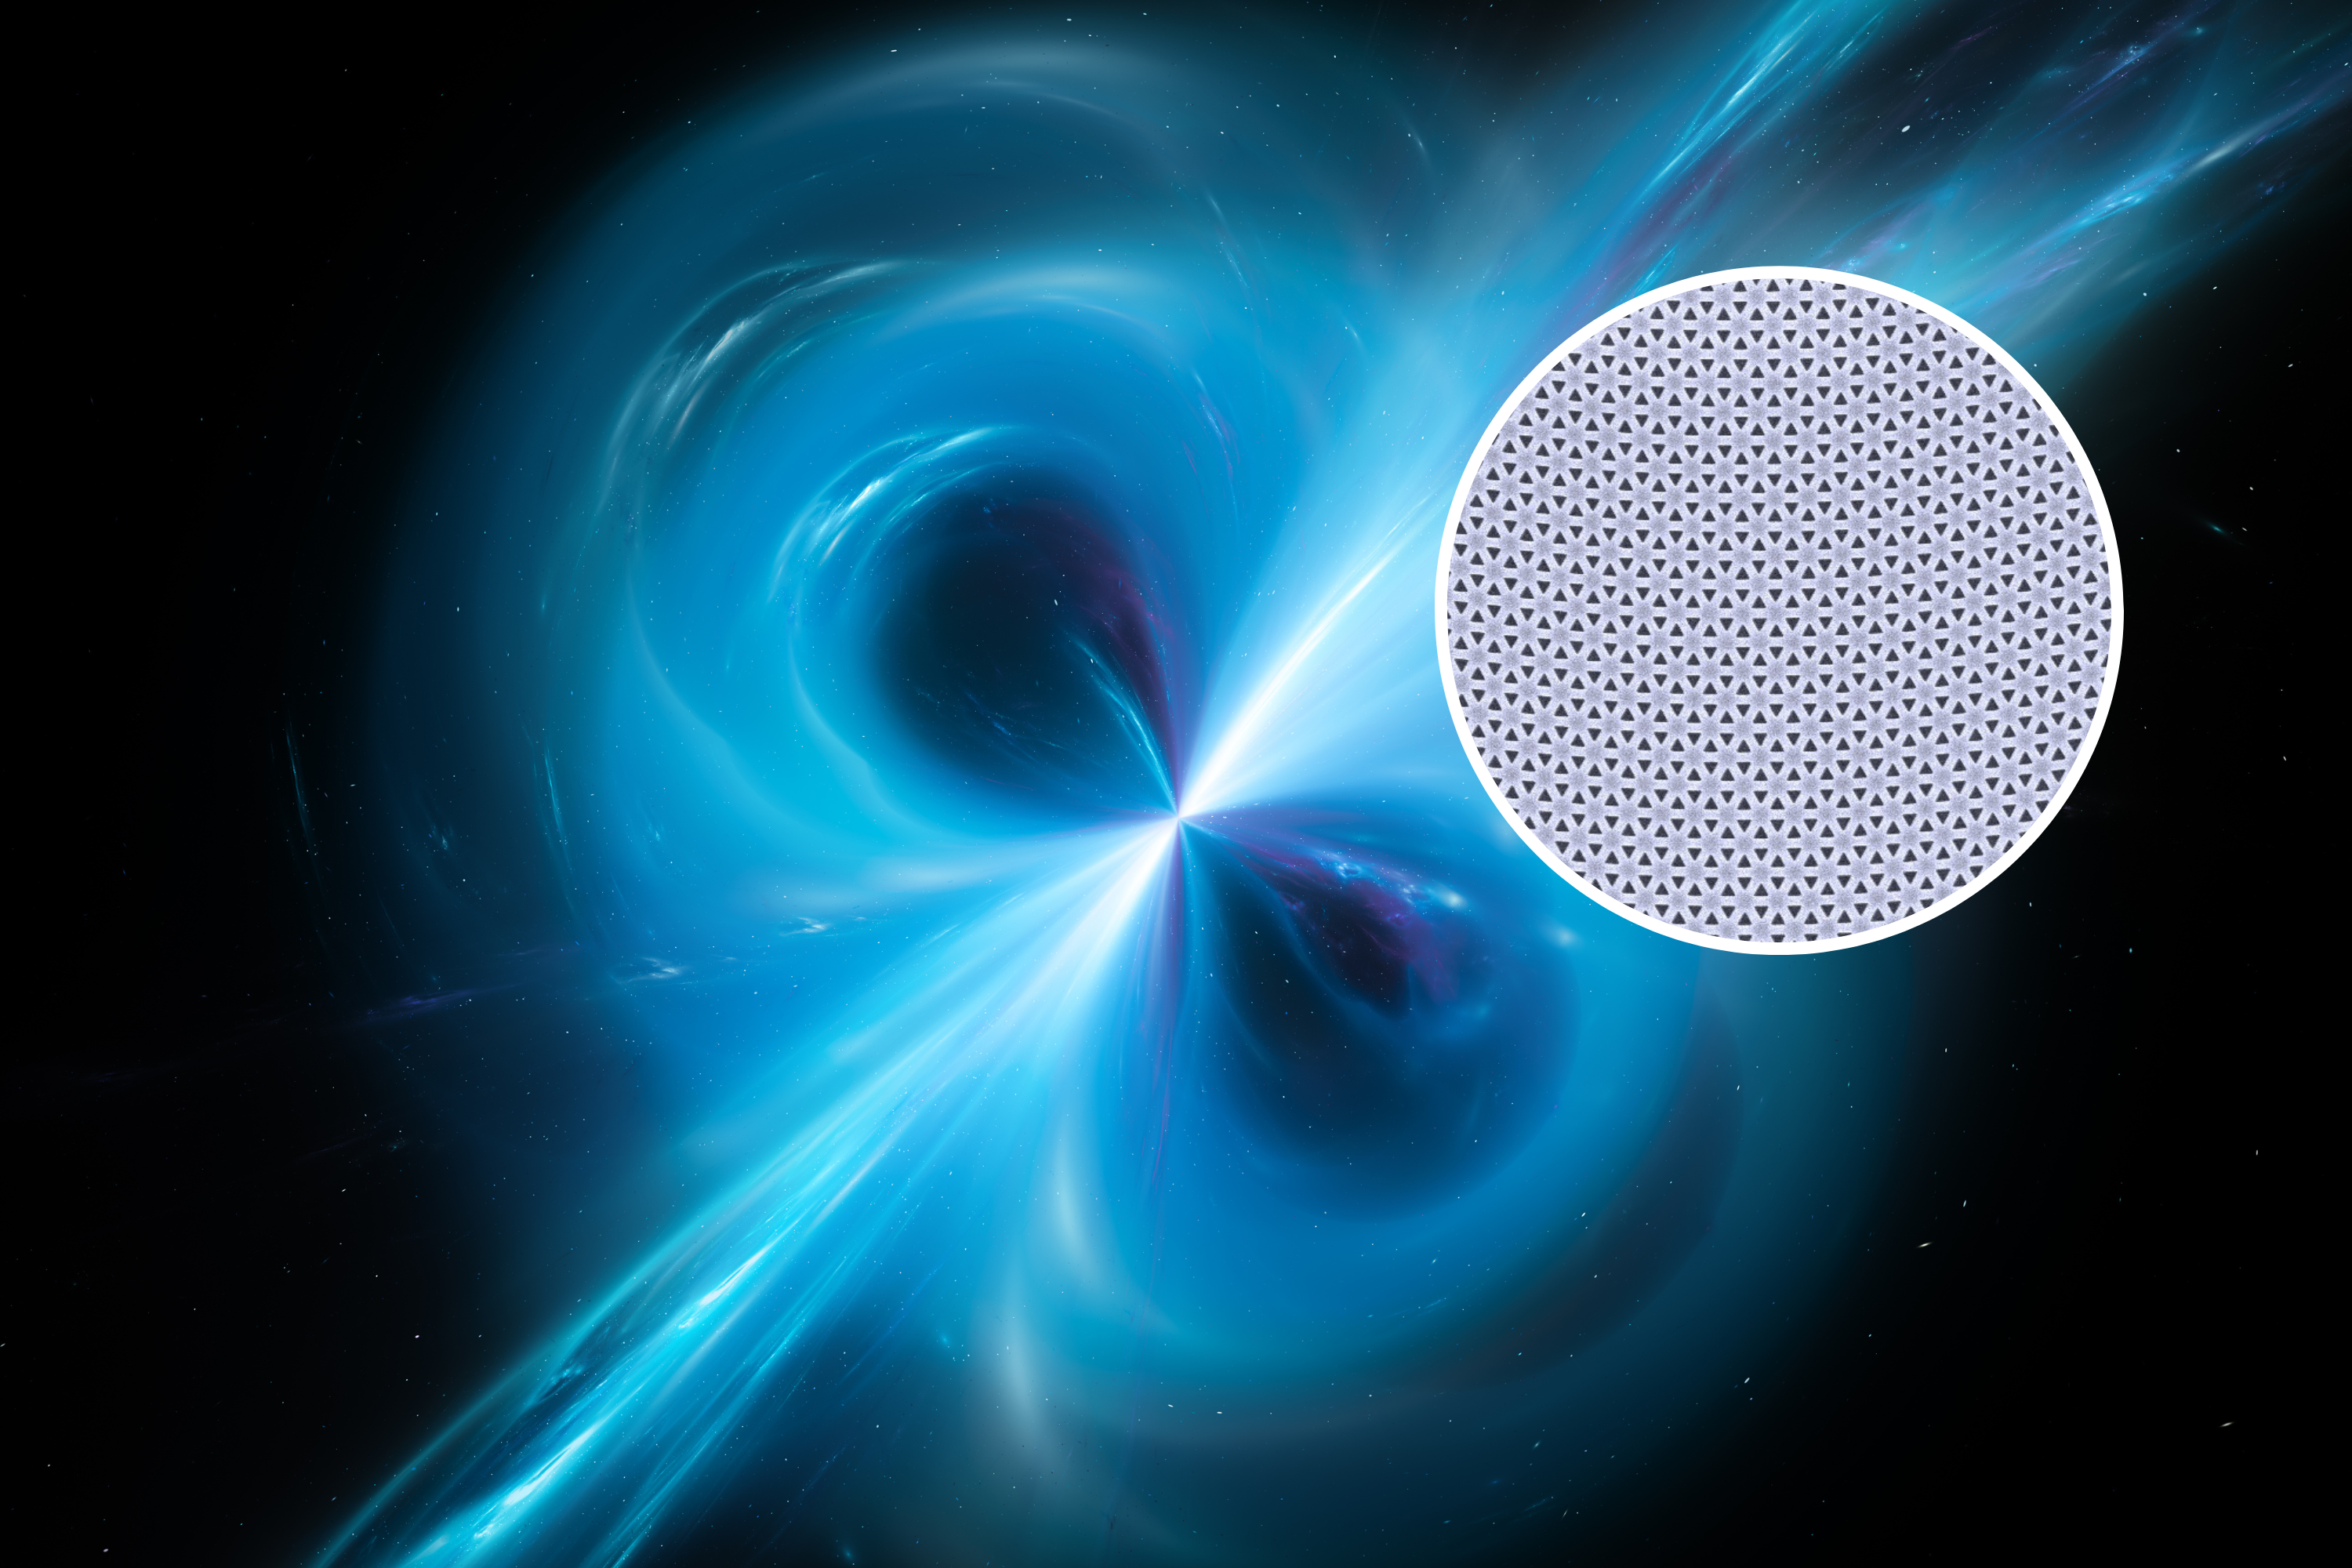 Light brought ‘to a halt’ in quantum breakthrough